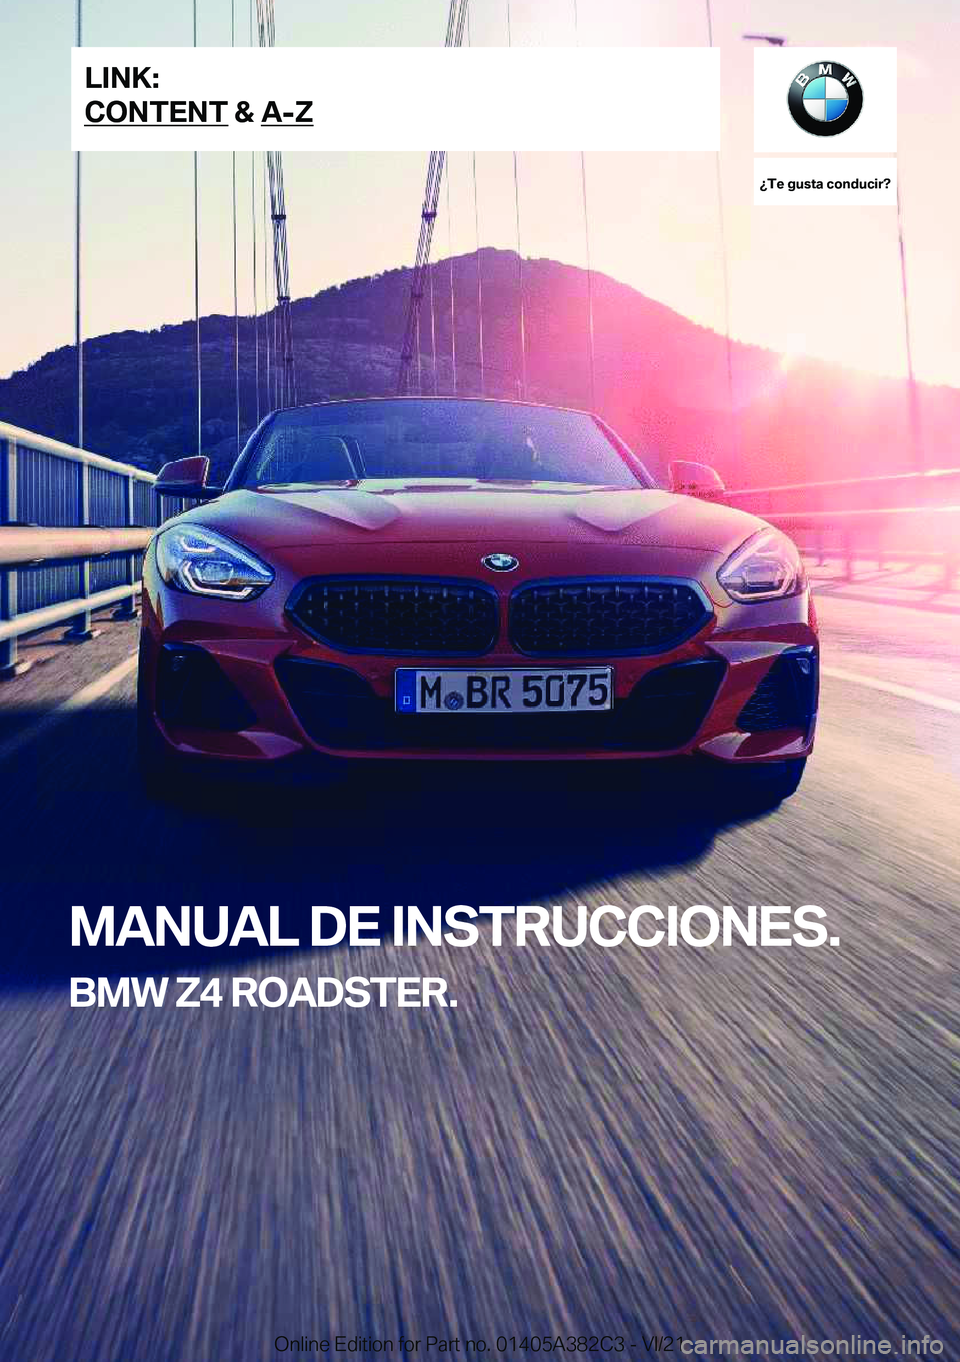 BMW Z4 2022  Manuales de Empleo (in Spanish) ��T�e��g�u�s�t�a��c�o�n�d�u�c�i�r� 
�M�A�N�U�A�L��D�E��I�N�S�T�R�U�C�C�I�O�N�E�S�.
�B�M�W��Z�4��R�O�A�D�S�T�E�R�.�L�I�N�K�:
�C�O�N�T�E�N�T��&��A�-�Z�O�n�l�i�n�e��E�d�i�t�i�o�n��f�o�r��P�a�